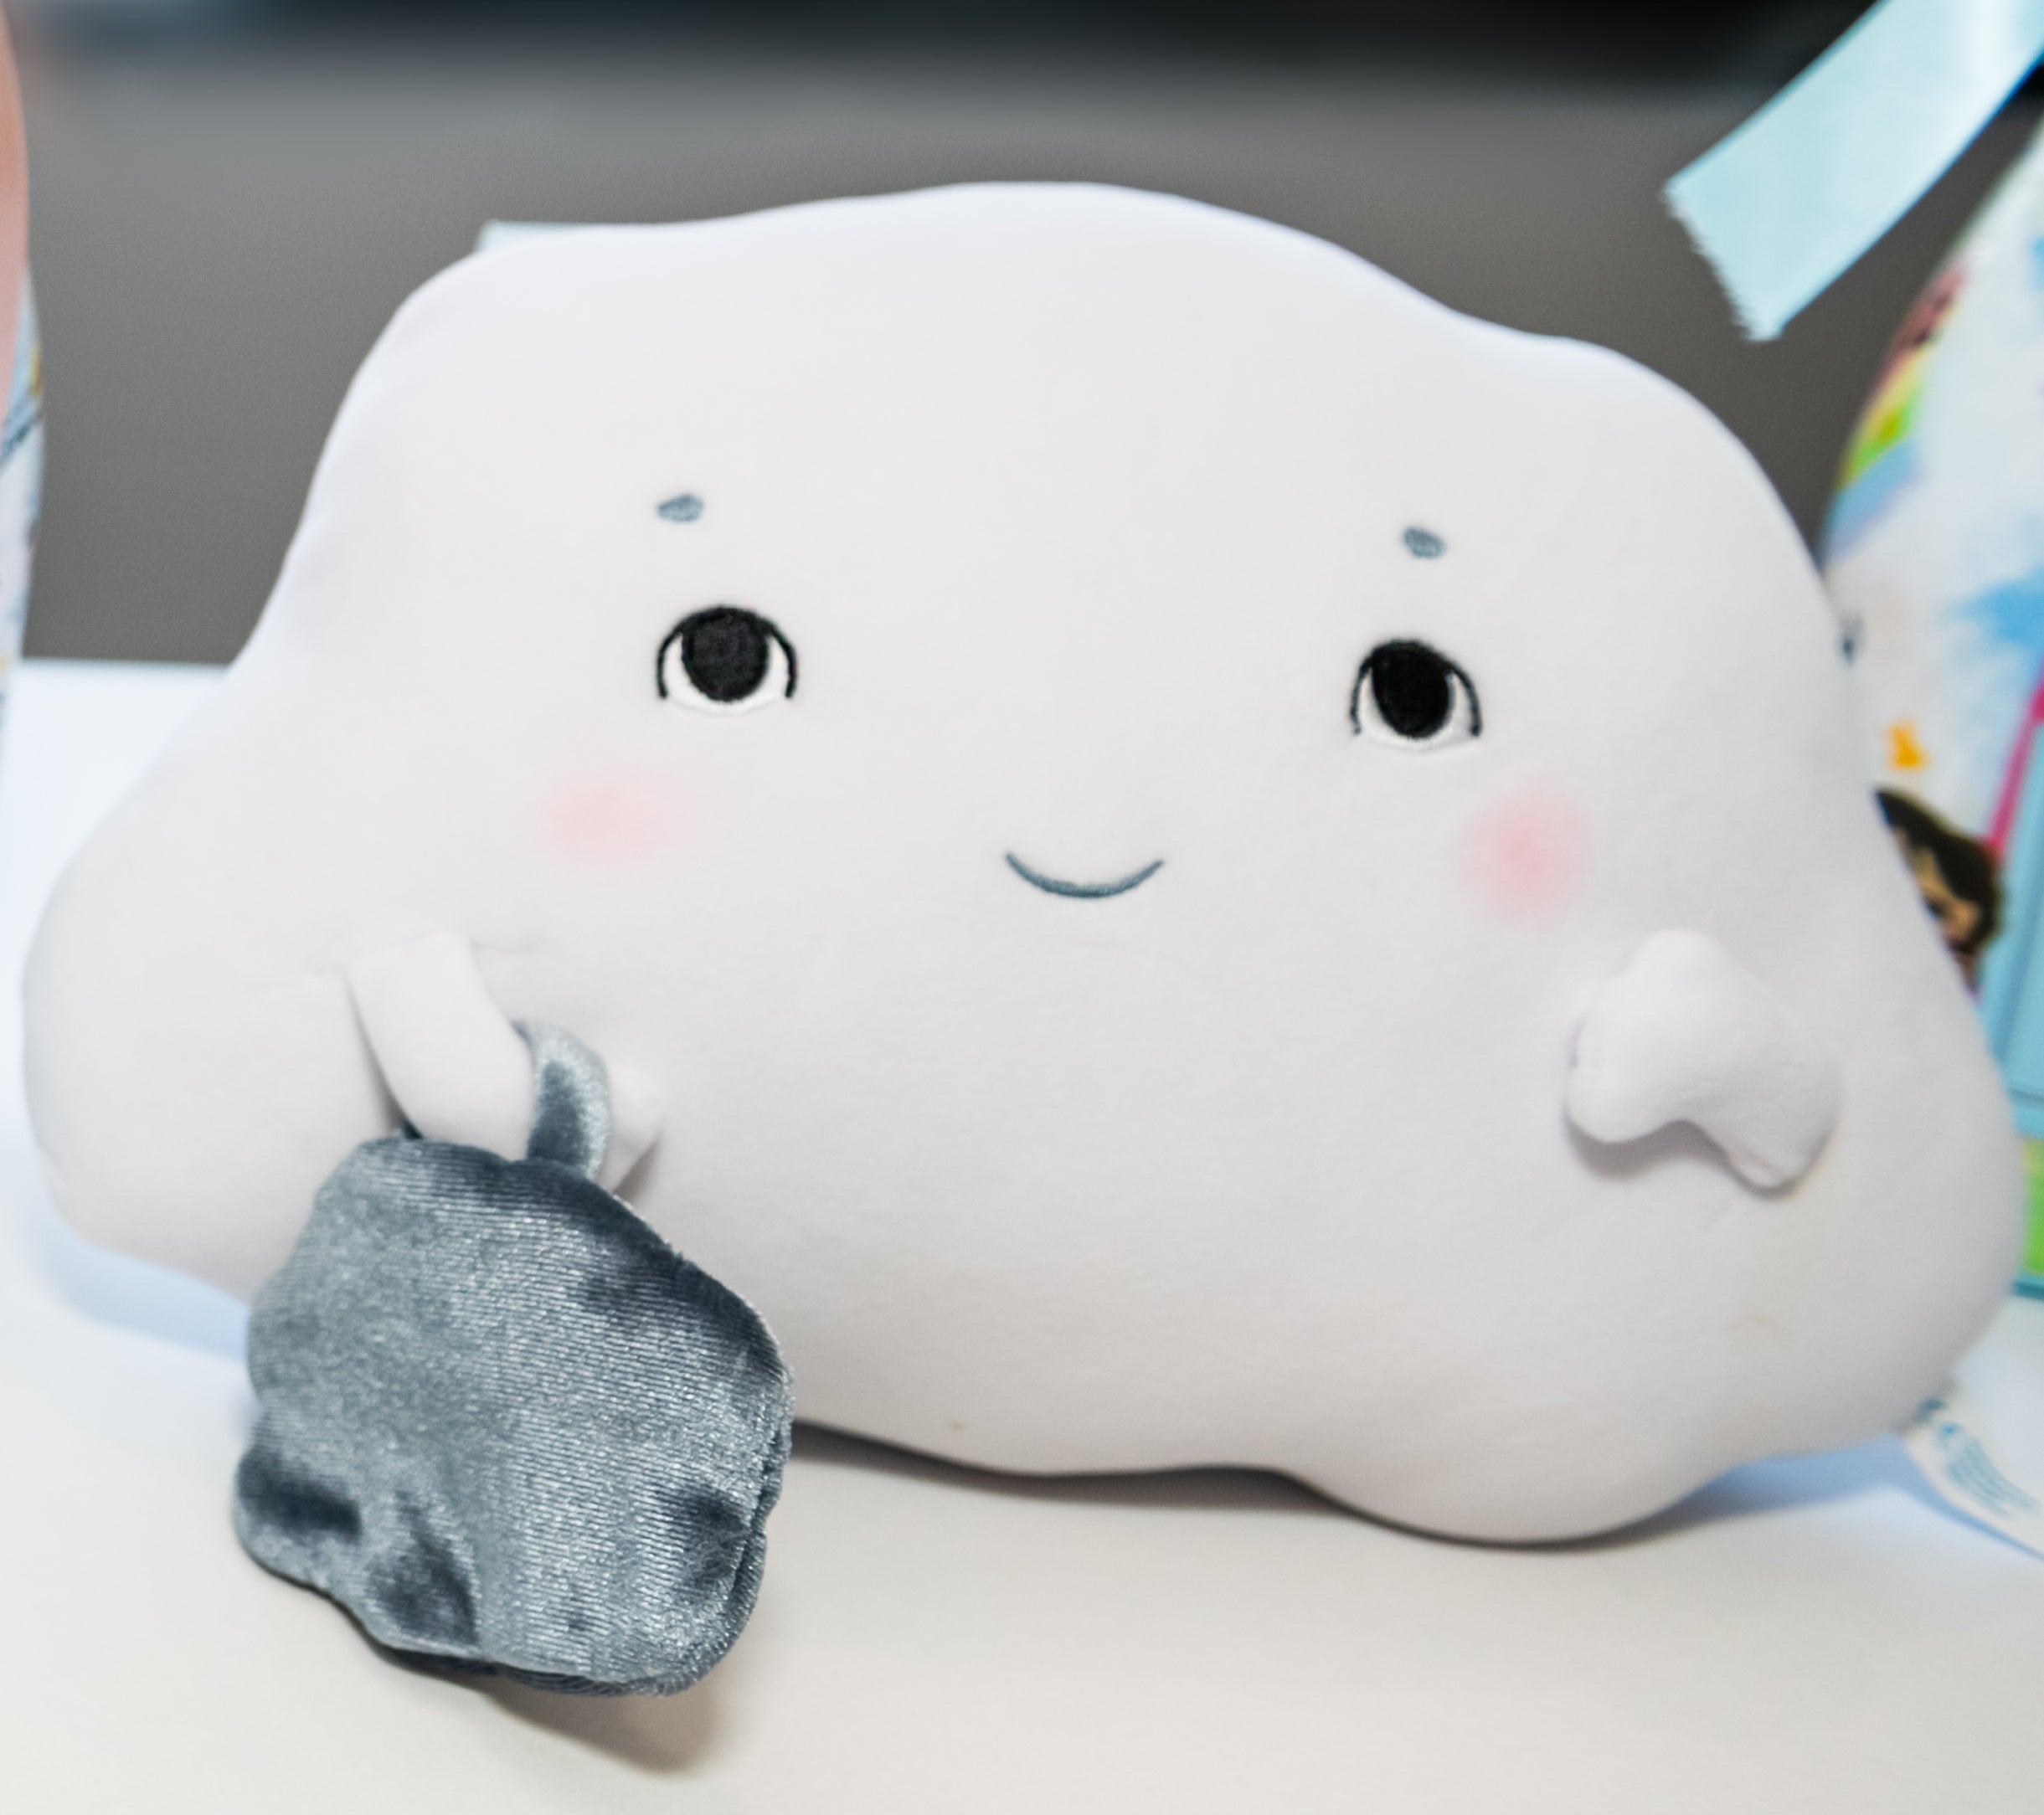 Worry Cloud Plush Toy – Mindful Minis Publishing